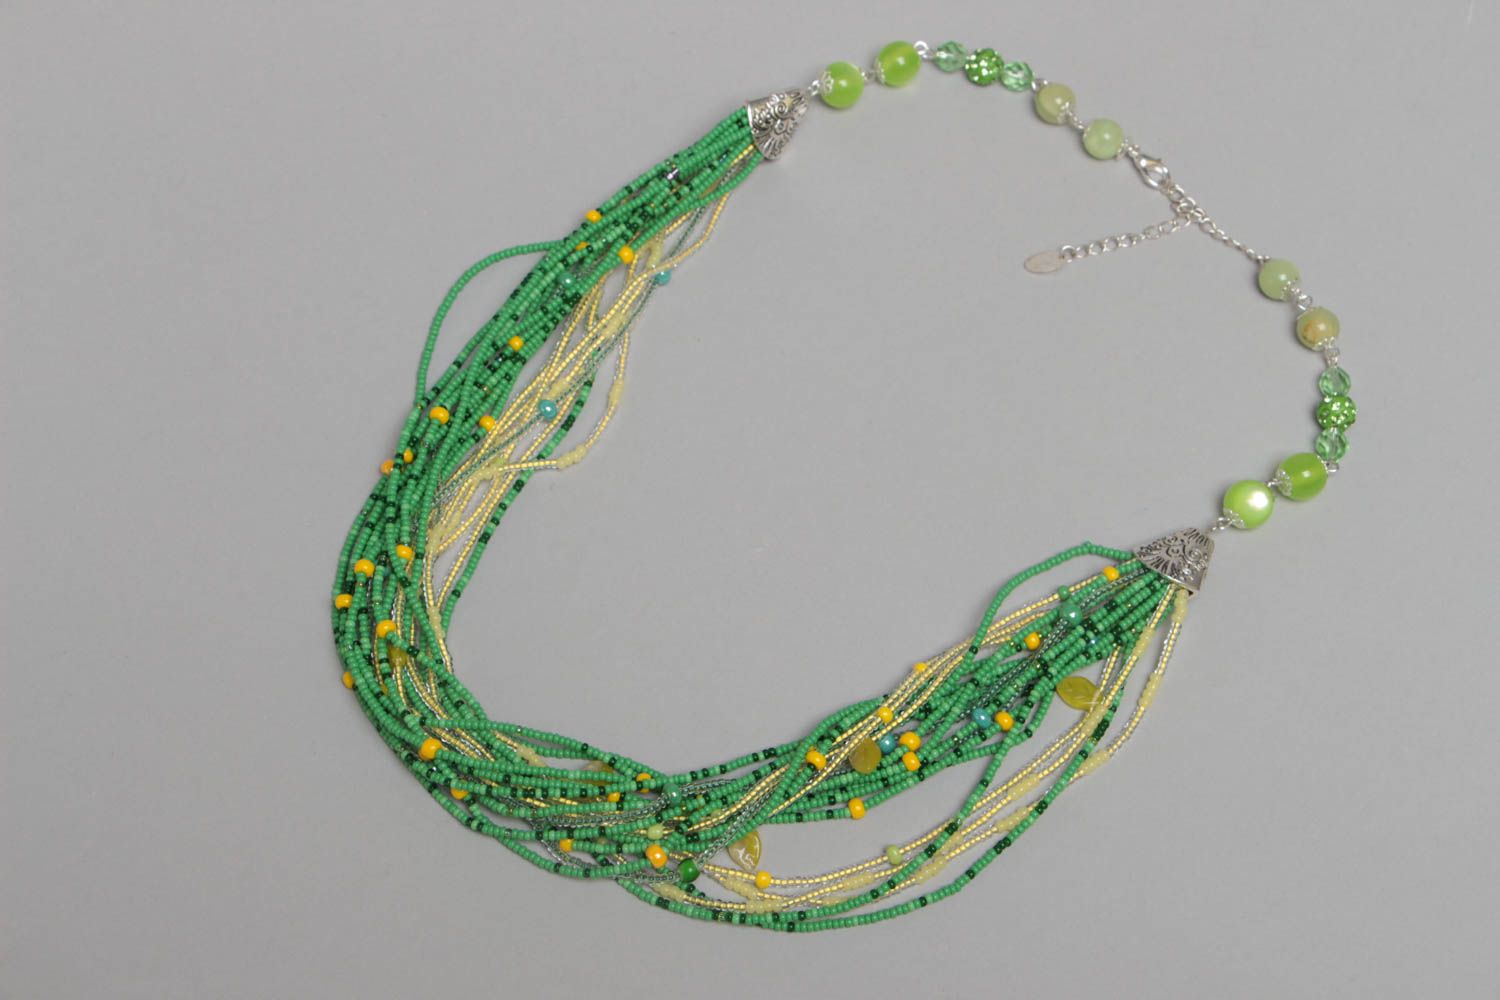 Ожерелье из бисера и бусин зеленое с желтым красивое яркое ручной работы фото 2